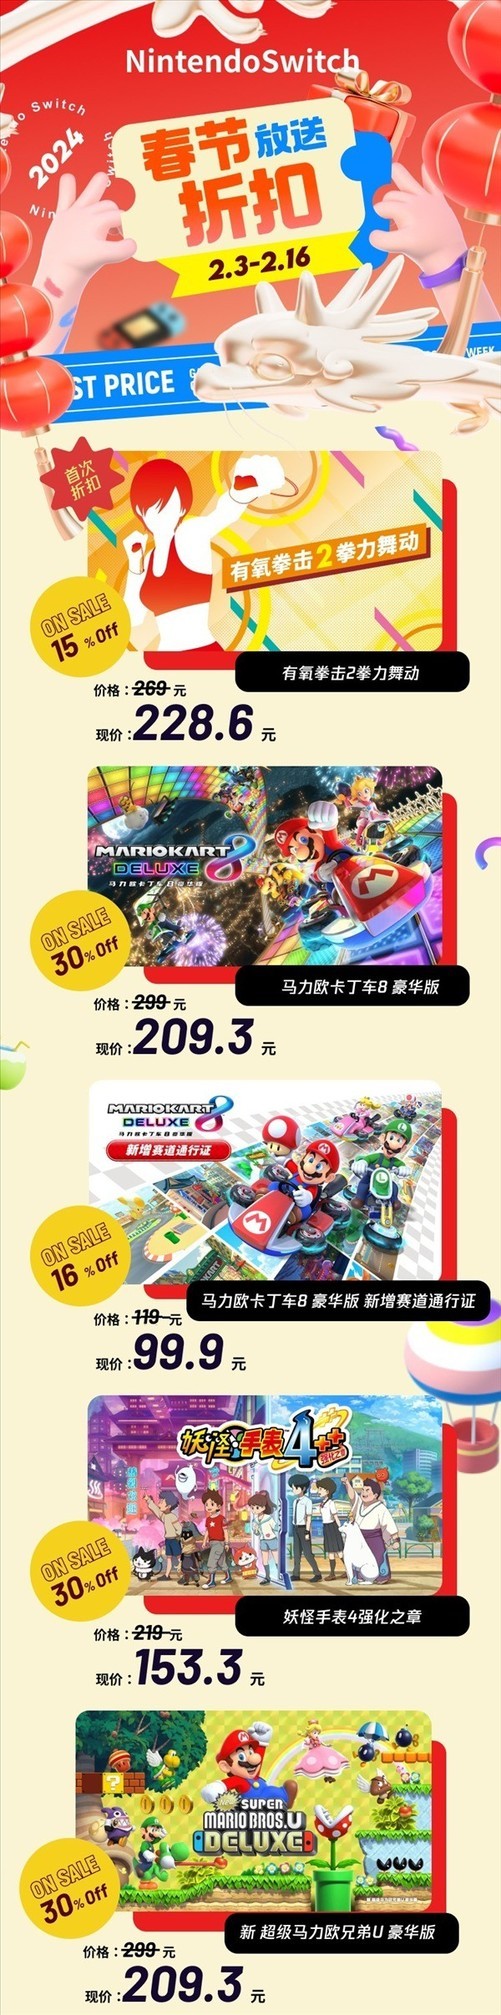 腾讯游戏与任天堂合作推出Nintendo e商店春节折扣活动